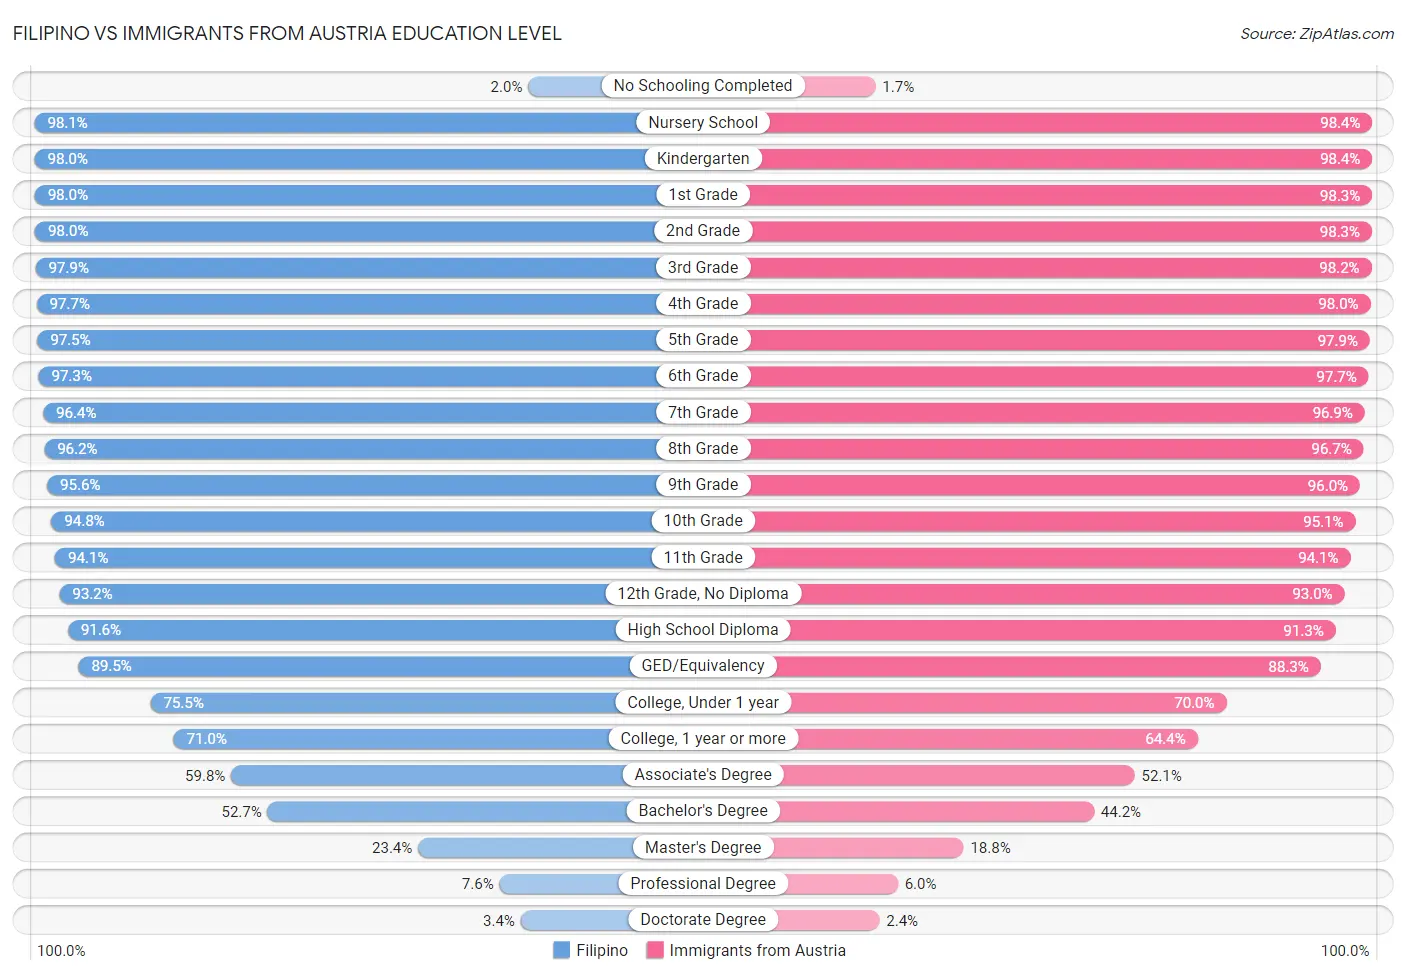 Filipino vs Immigrants from Austria Education Level